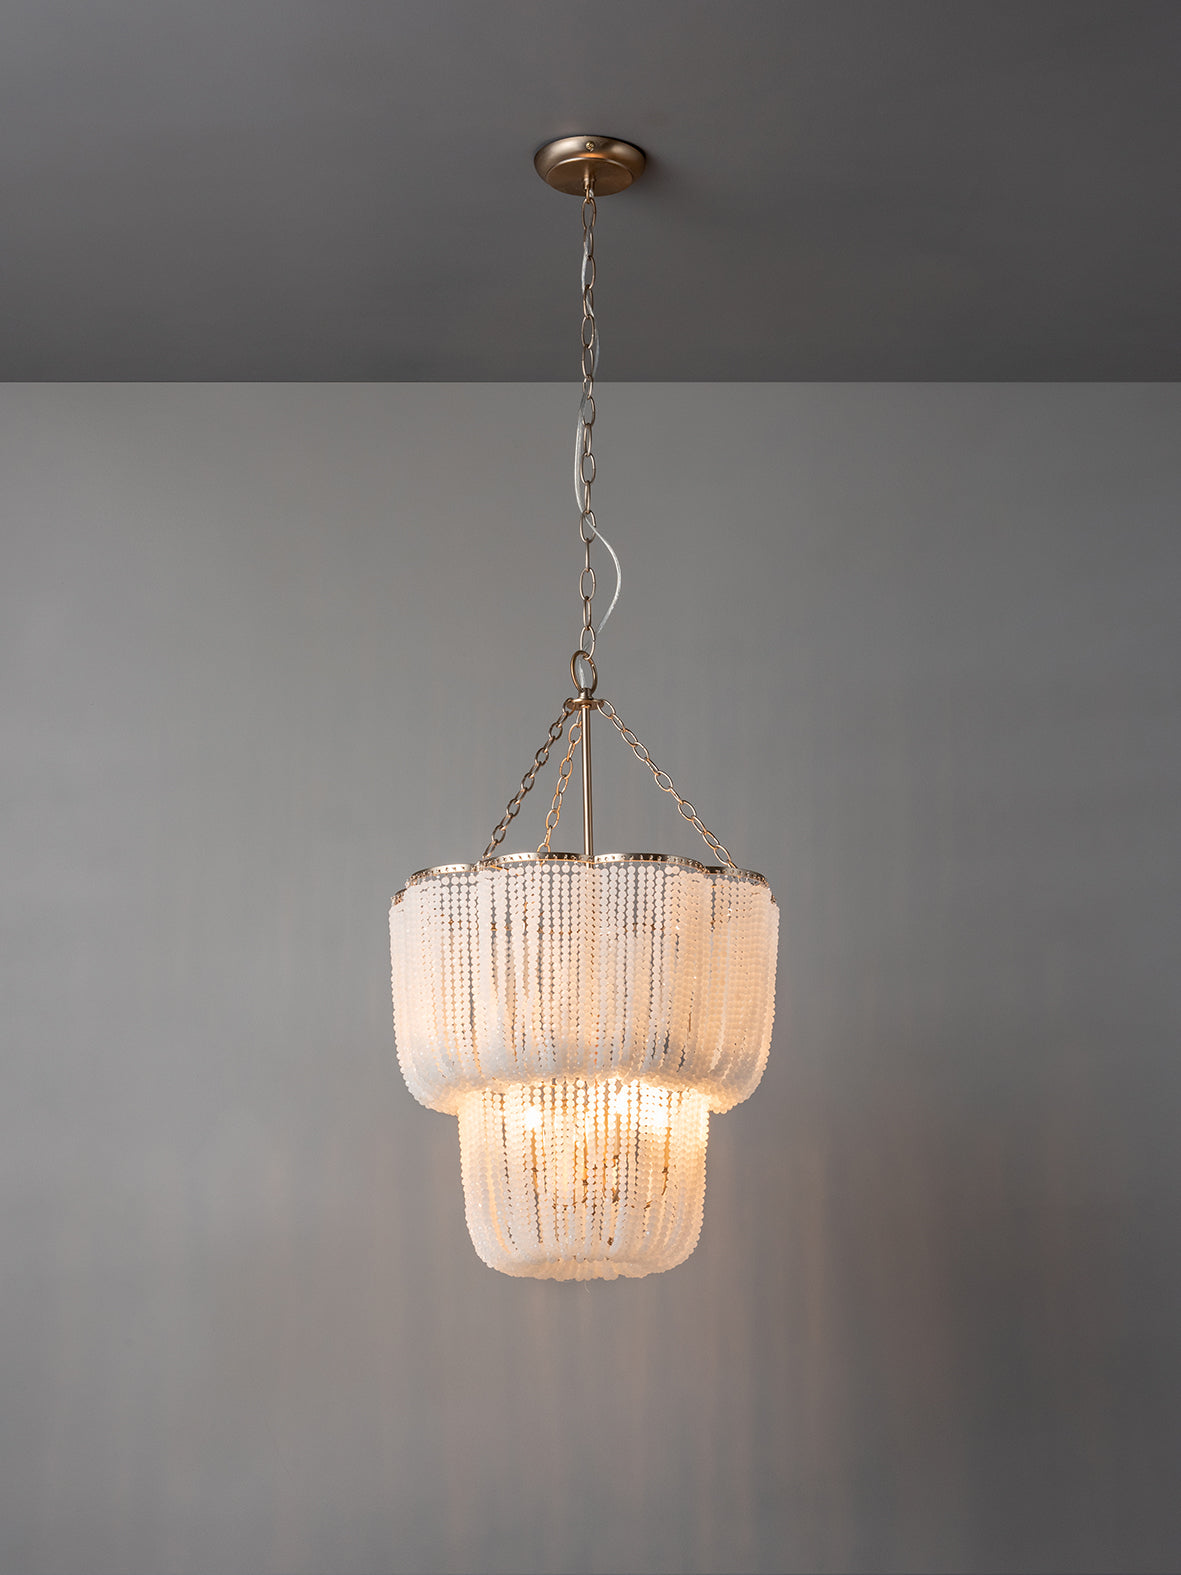 Pello - 4 light white scalloped chandelier | Ceiling Light | Lights & Lamps Inc | Modern Affordable Designer Lighting | USA